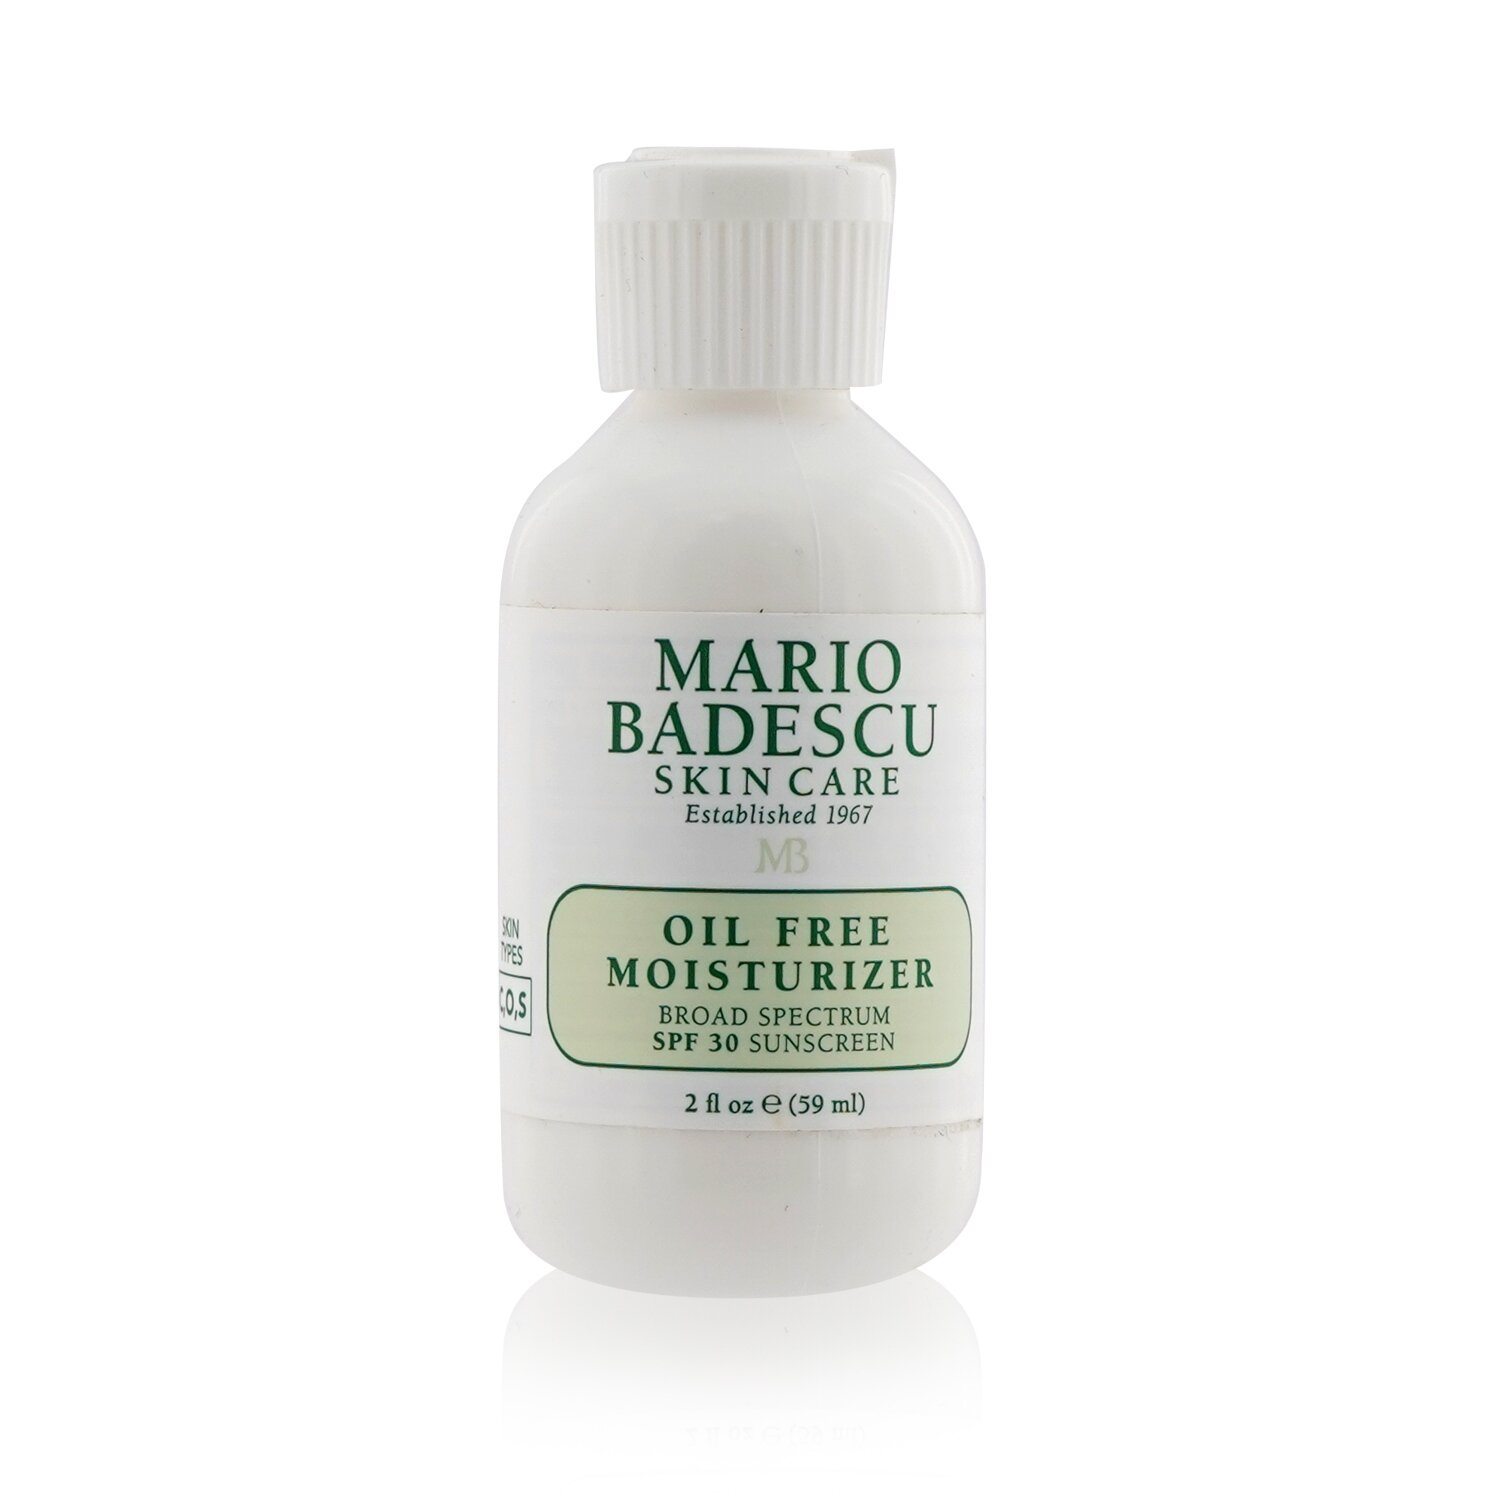 Mario Badescu Oil Free Moisturizer SPF 30 - For Oily/ Sensitive Skin Types | KOODING